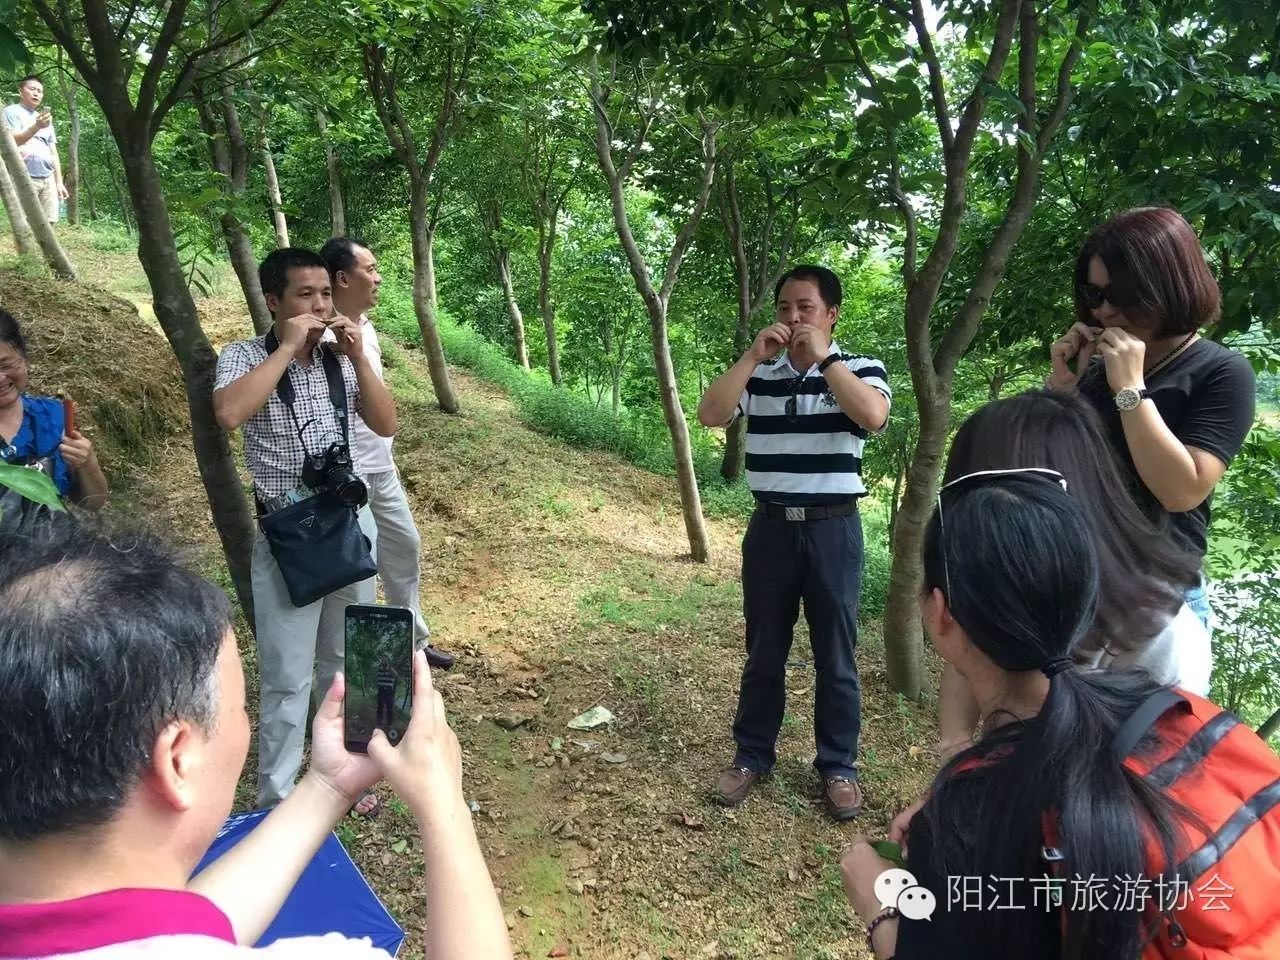 祝贺阳江市田山生态园基地荣获获得《广东省农业旅游示范点》的称号